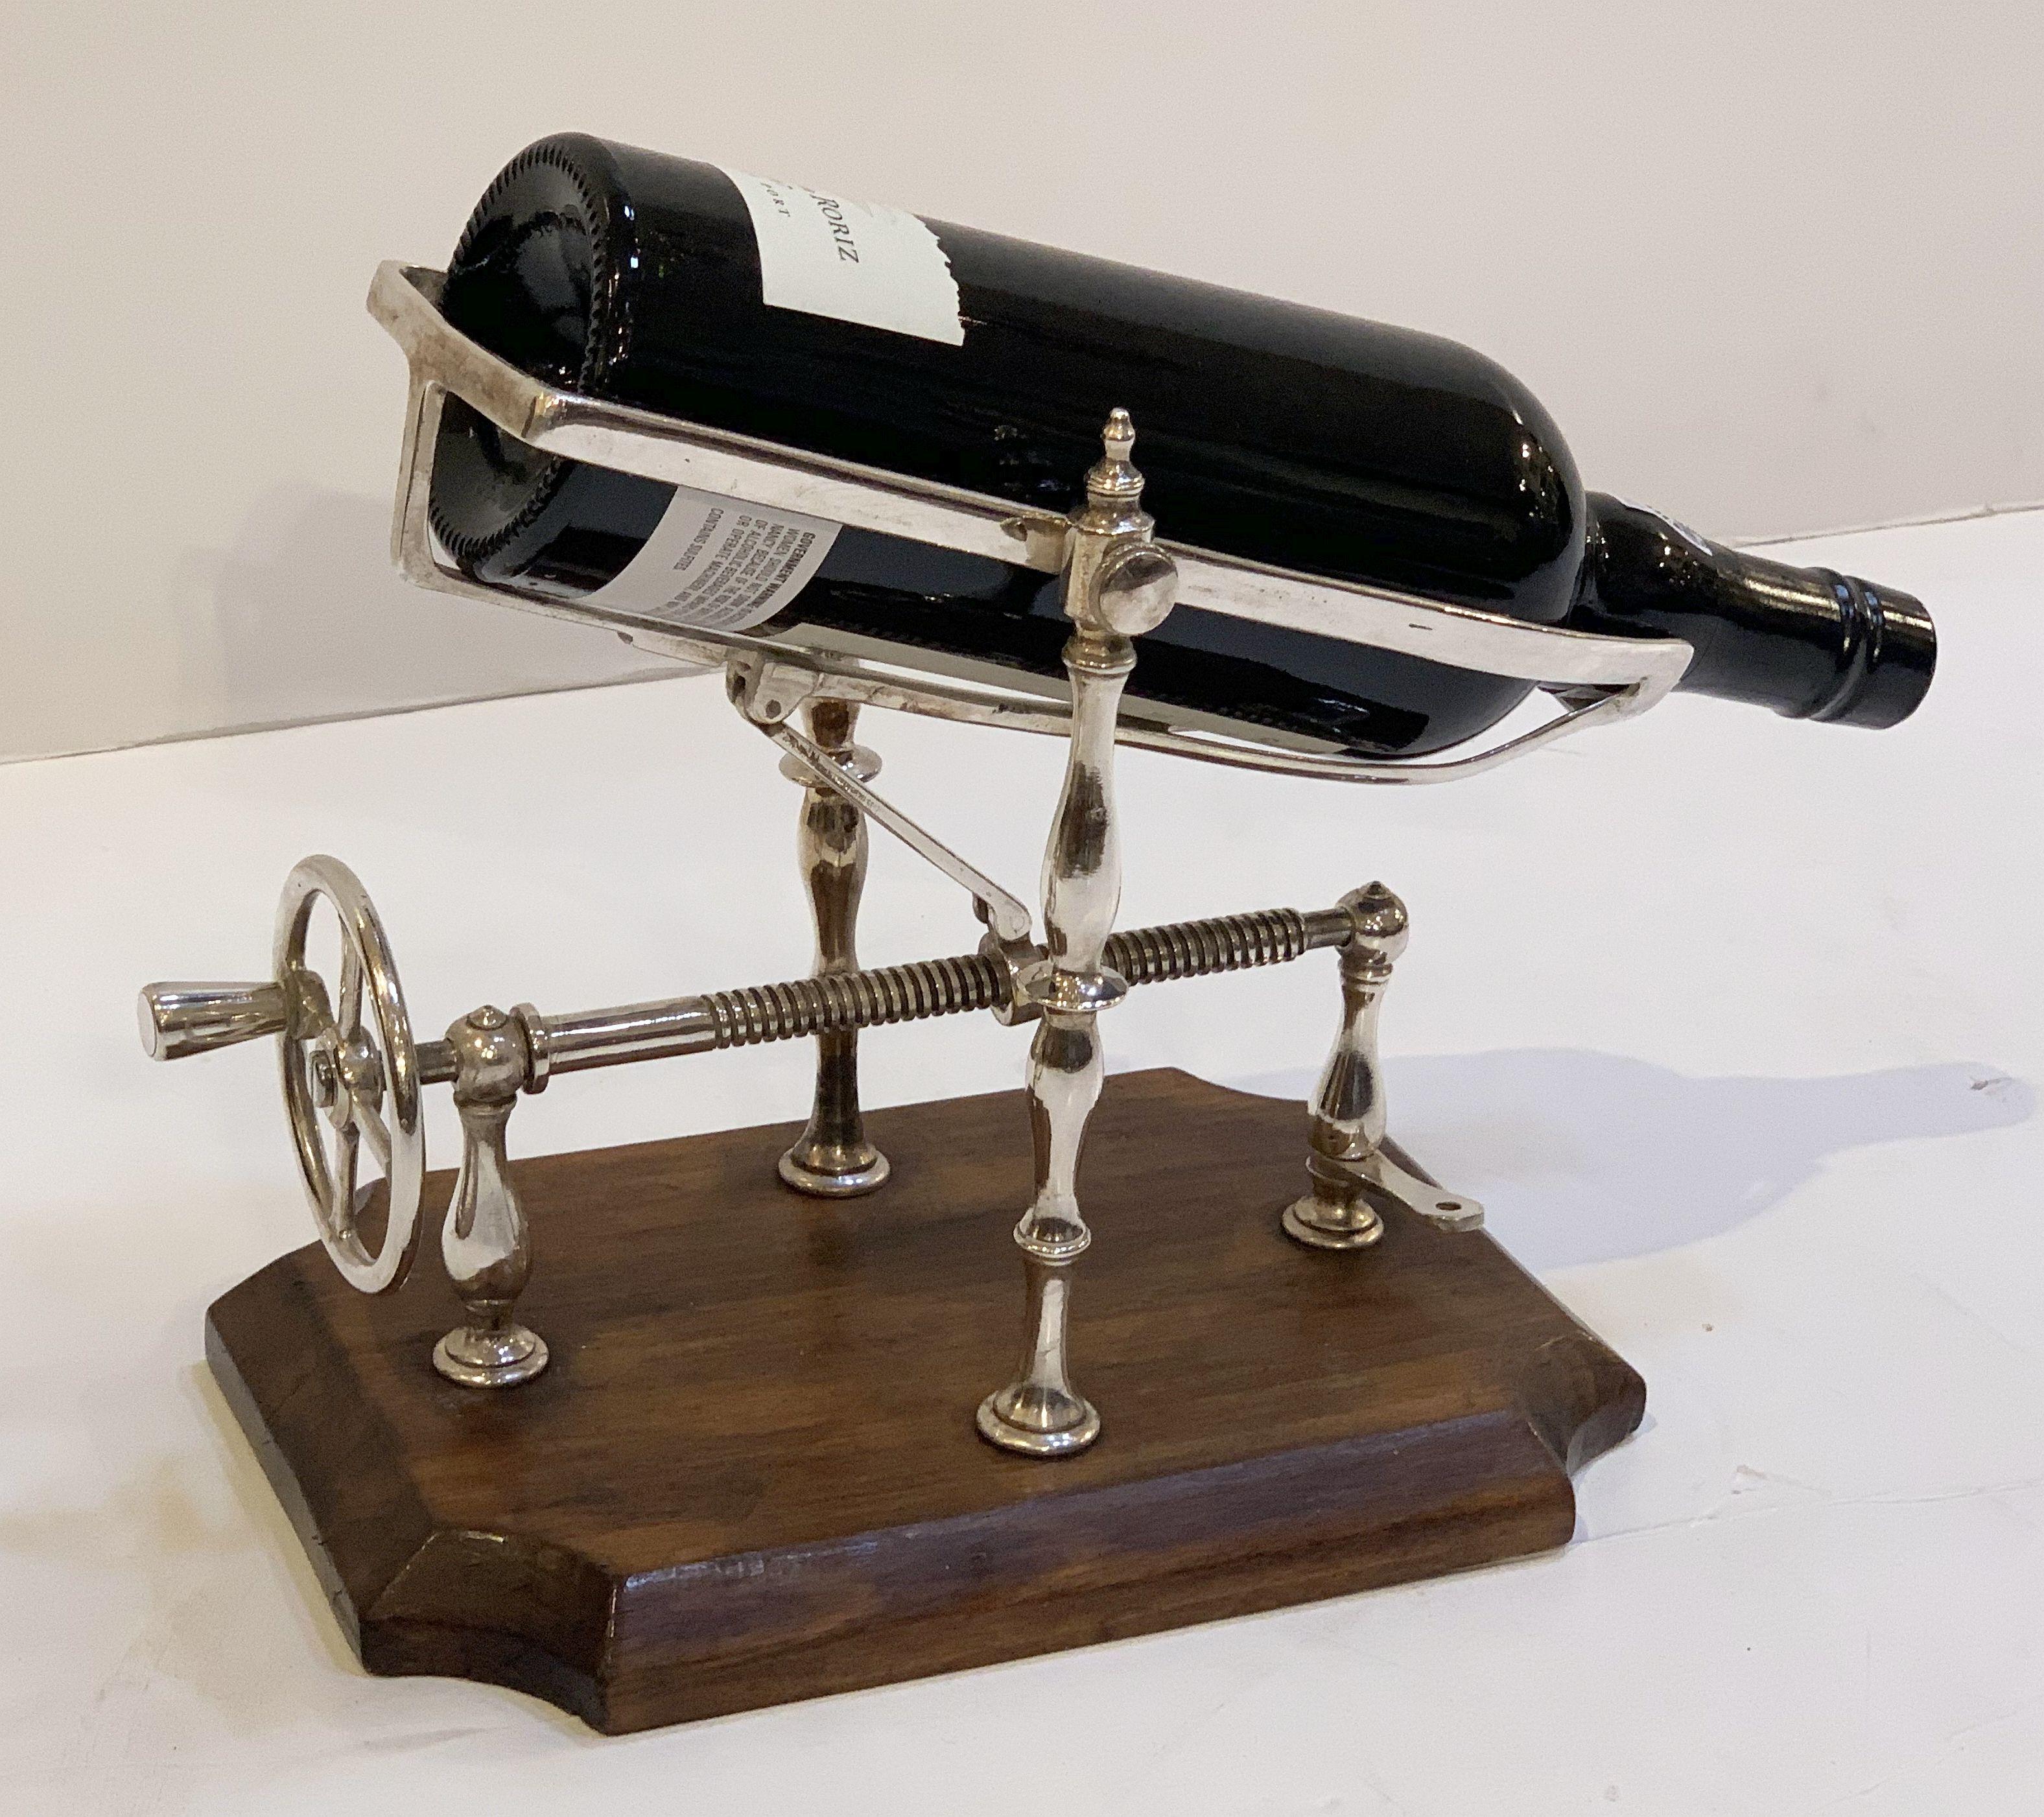 Vintage Port Decanting Cradle or Wine Bottle Pourer from England 1